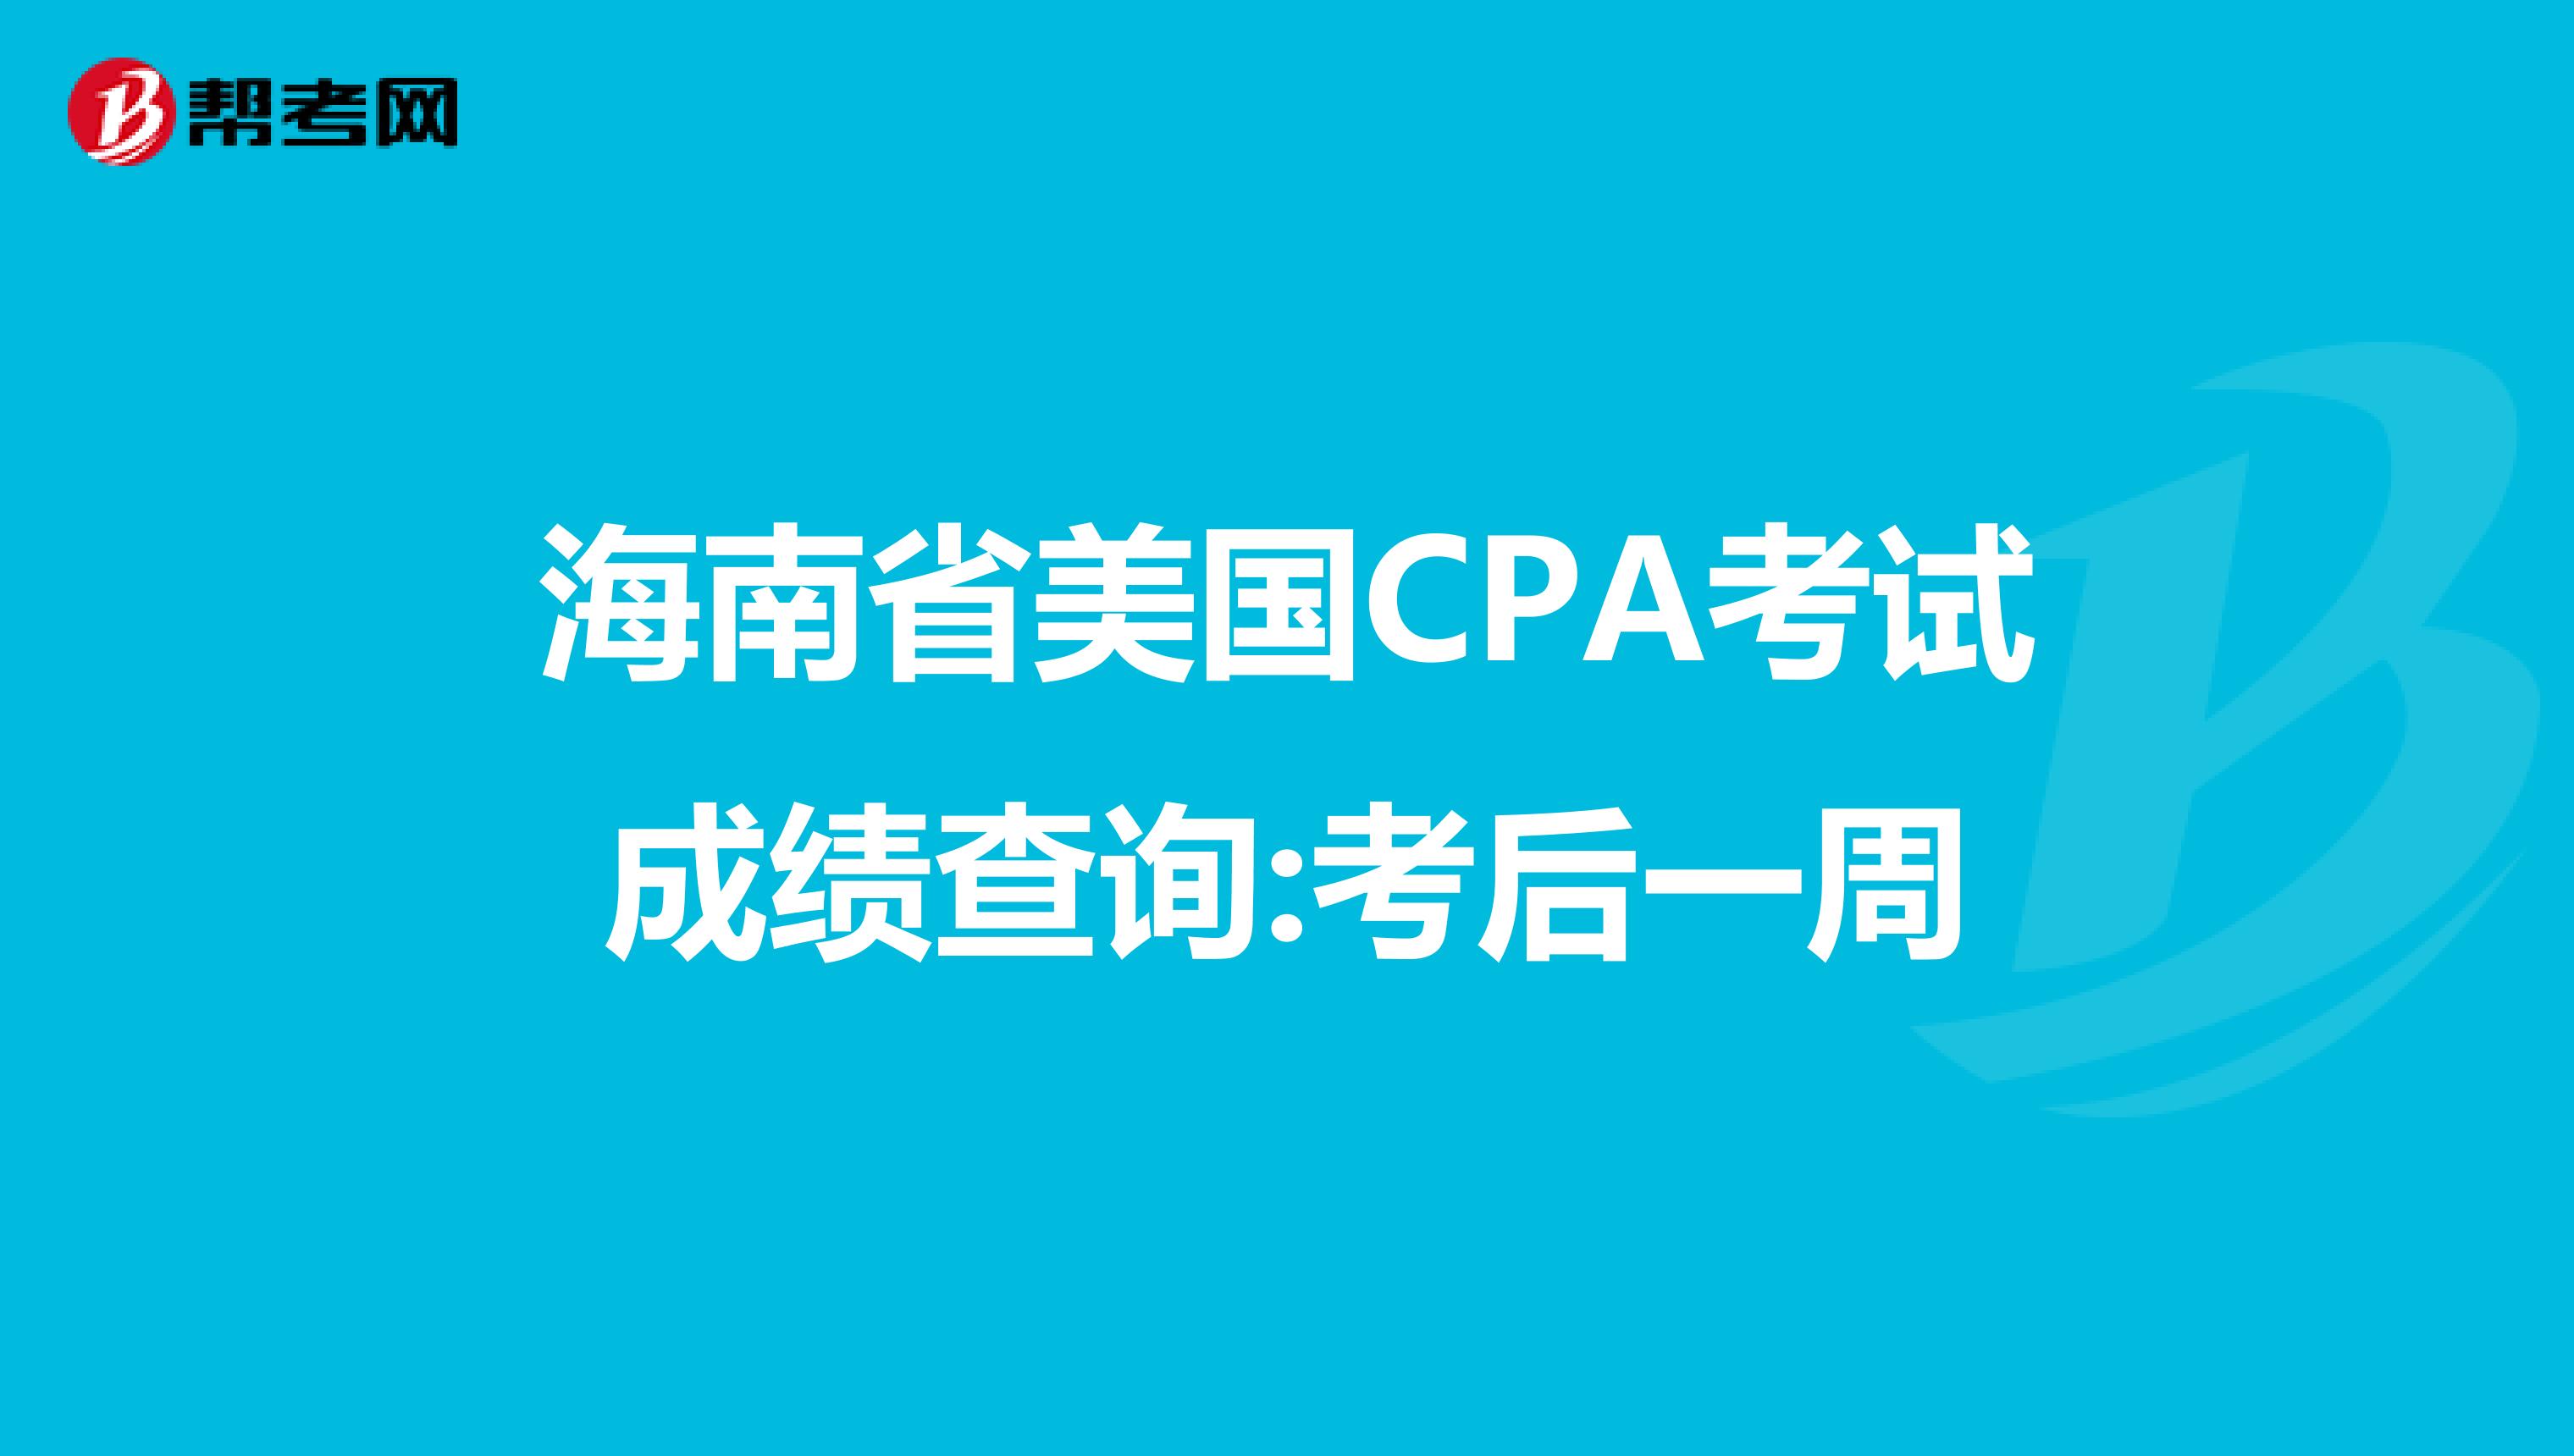 海南省美国CPA考试成绩查询:考后一周